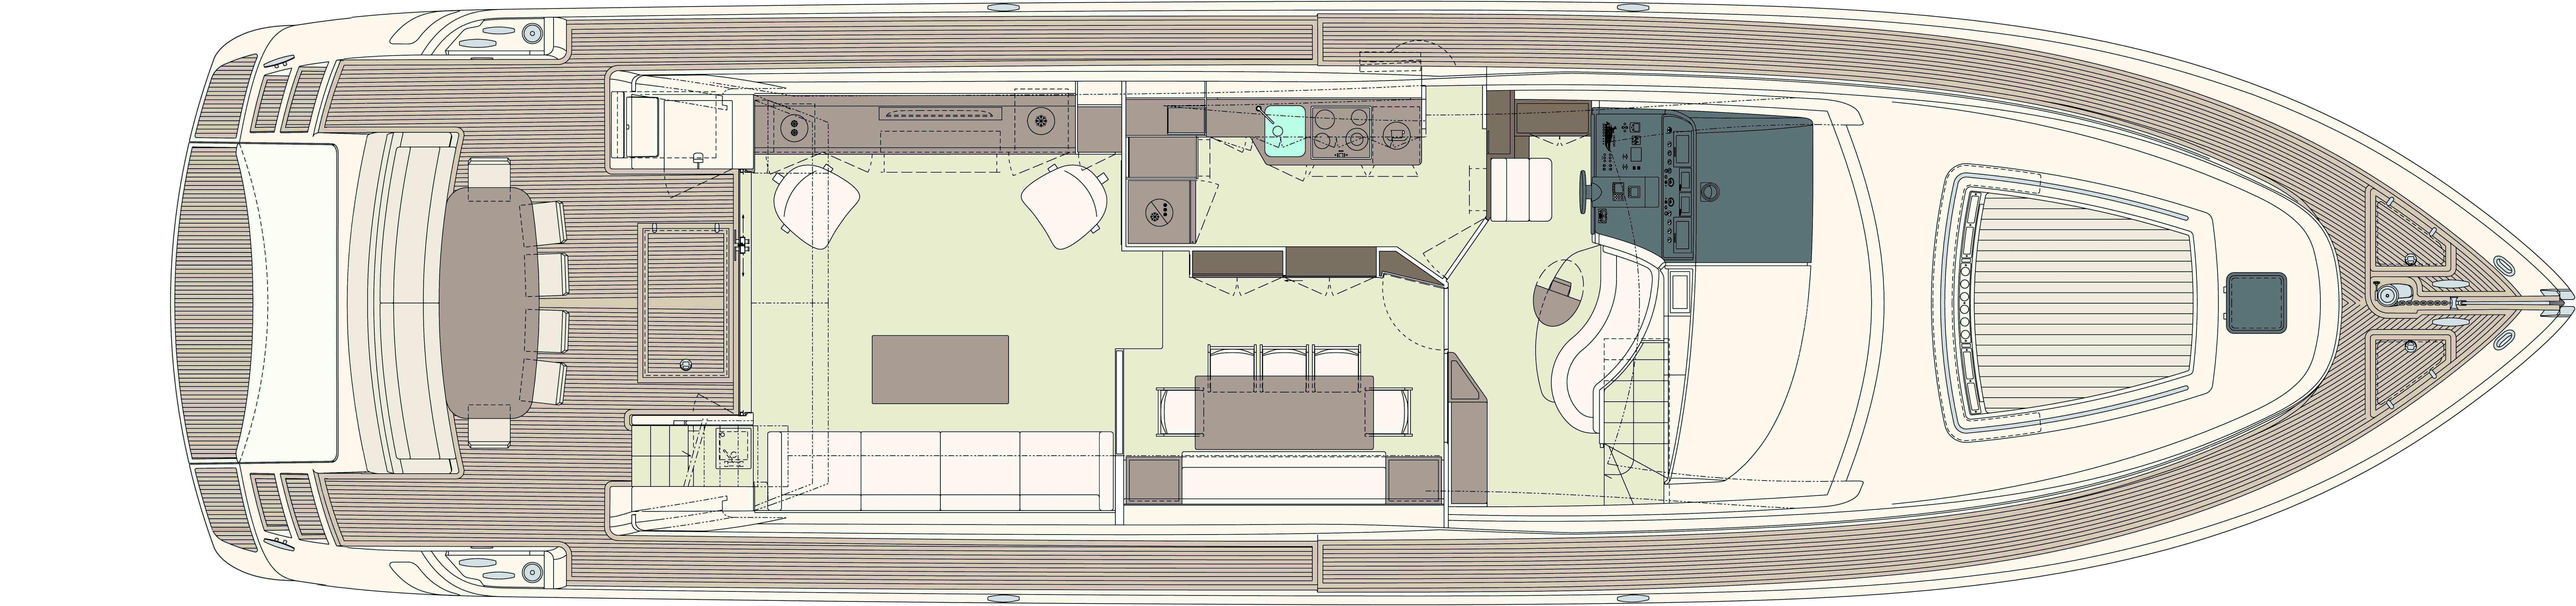 Manufacturer Provided Image: Riva 75' Venere Super Upper Deck Layout Plan